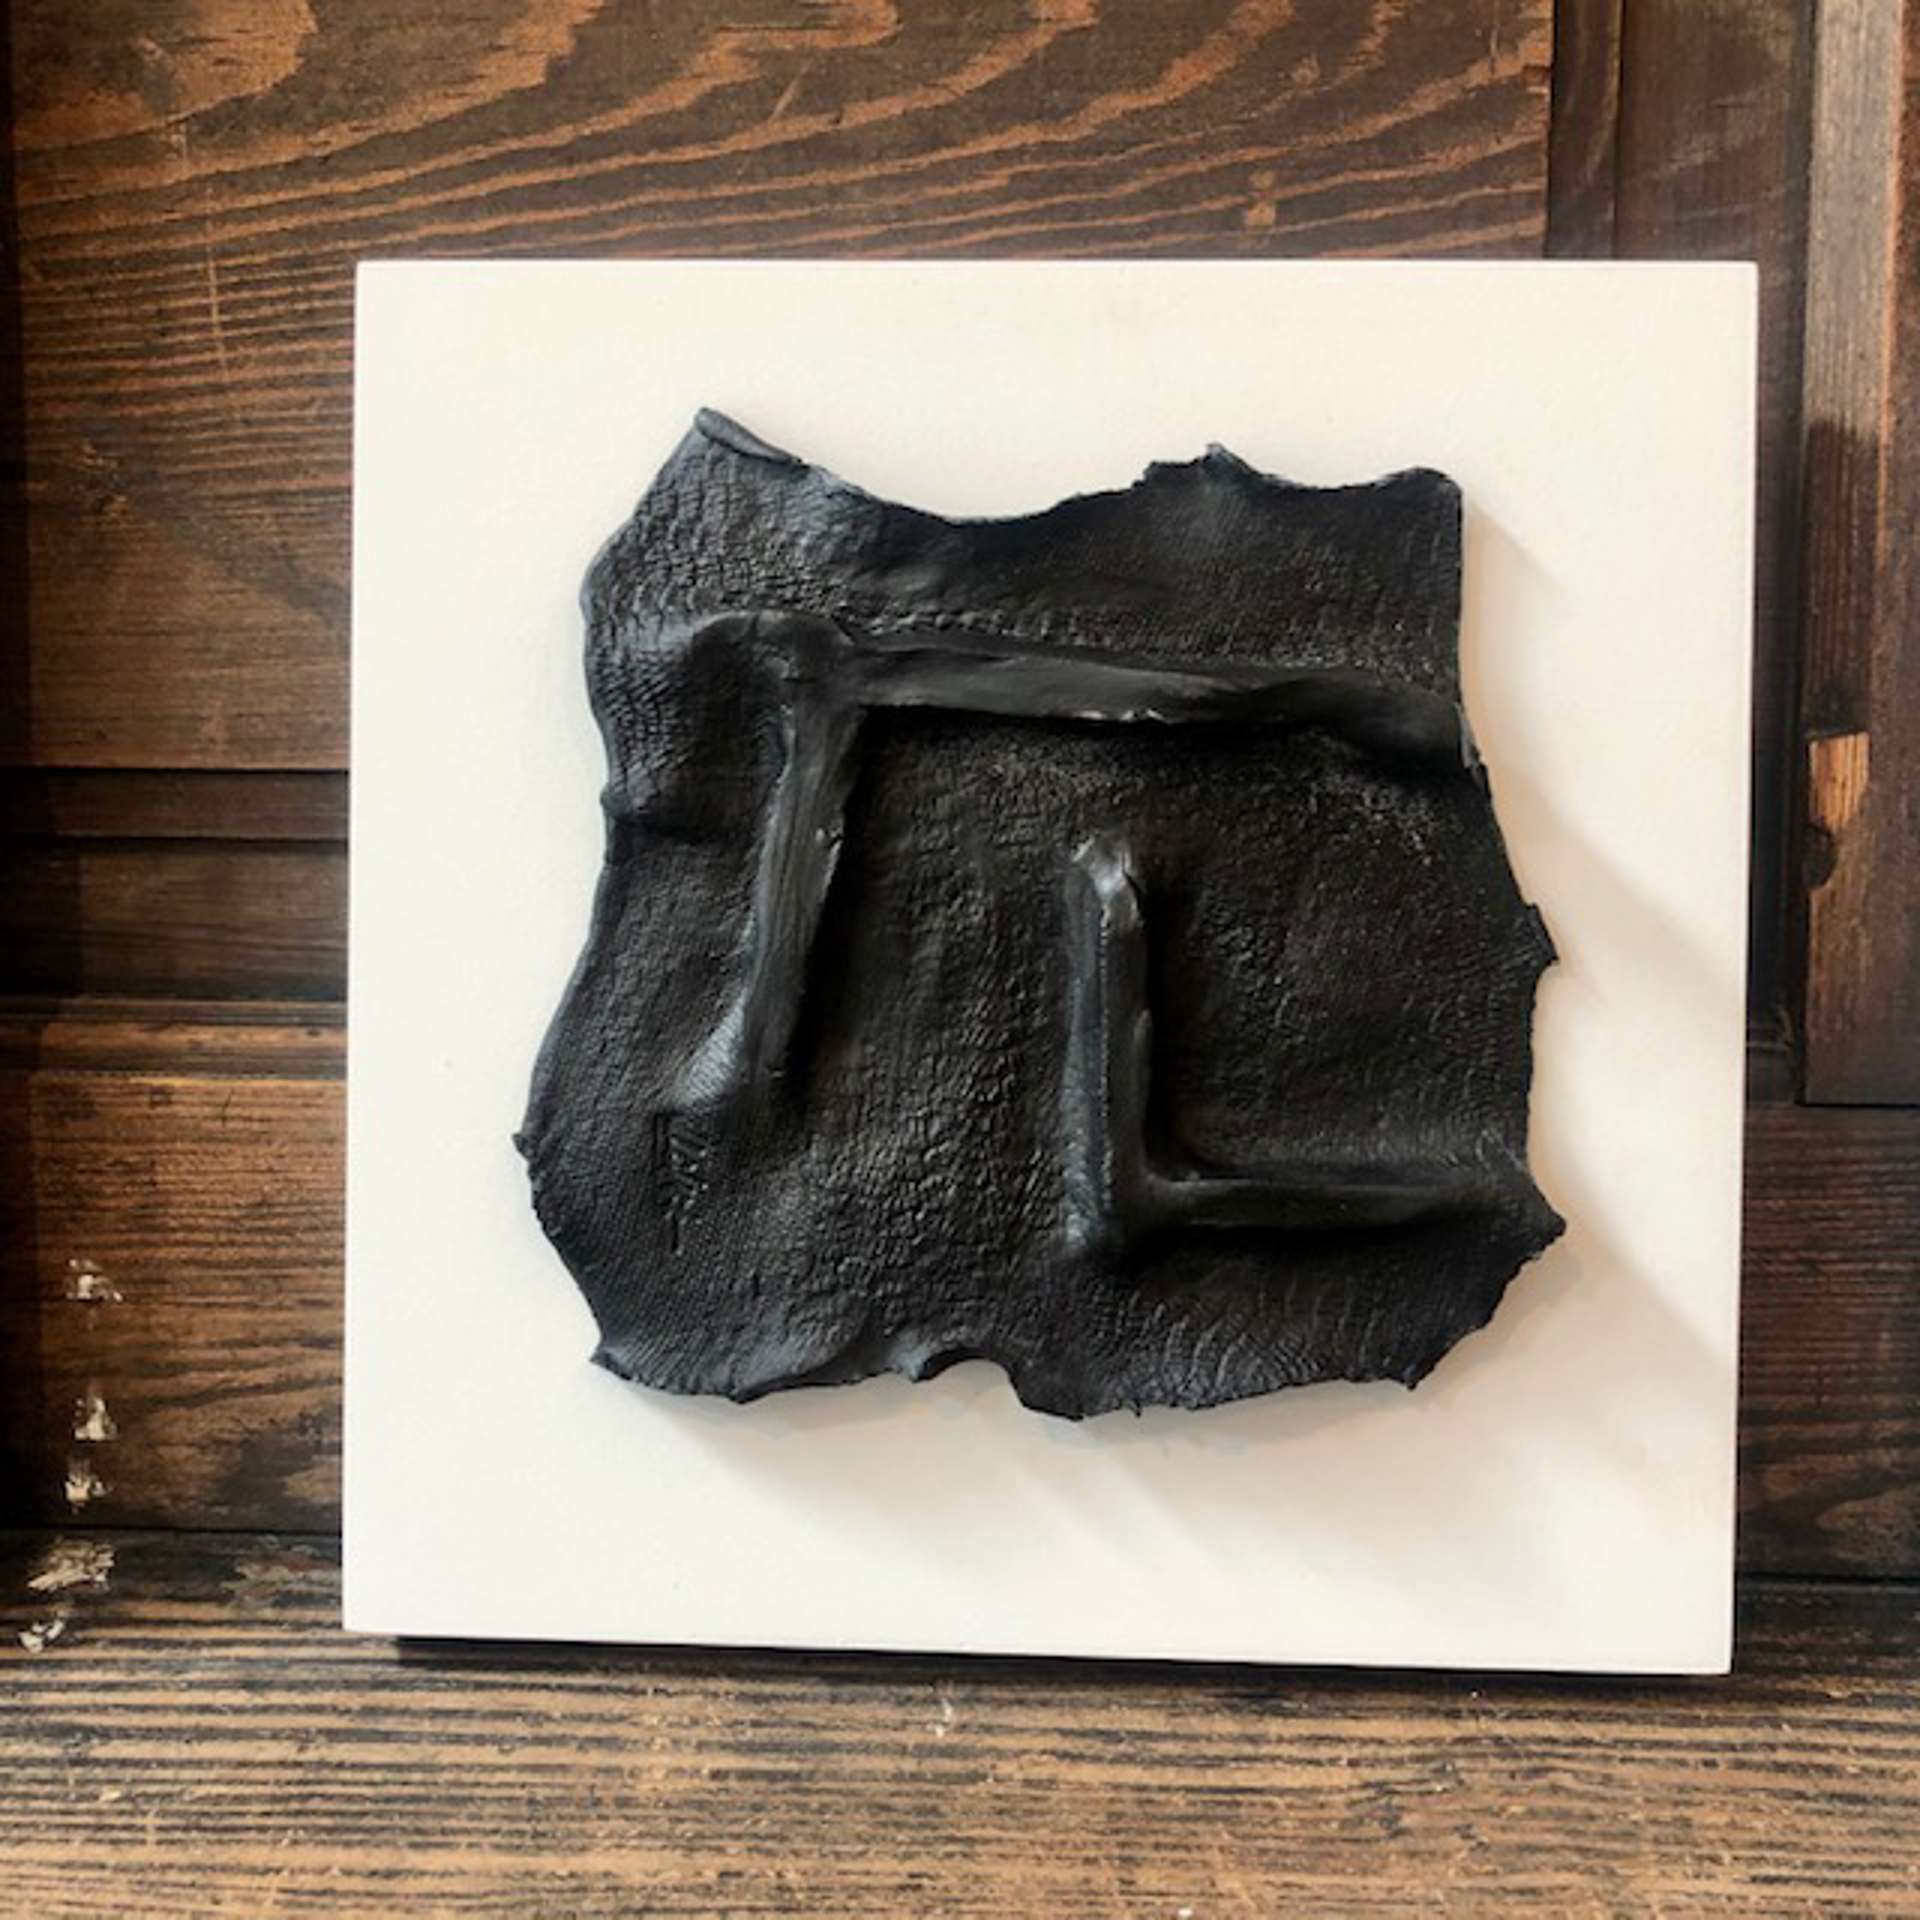 Unframed Black on White Artifact 1 by Laura Clark